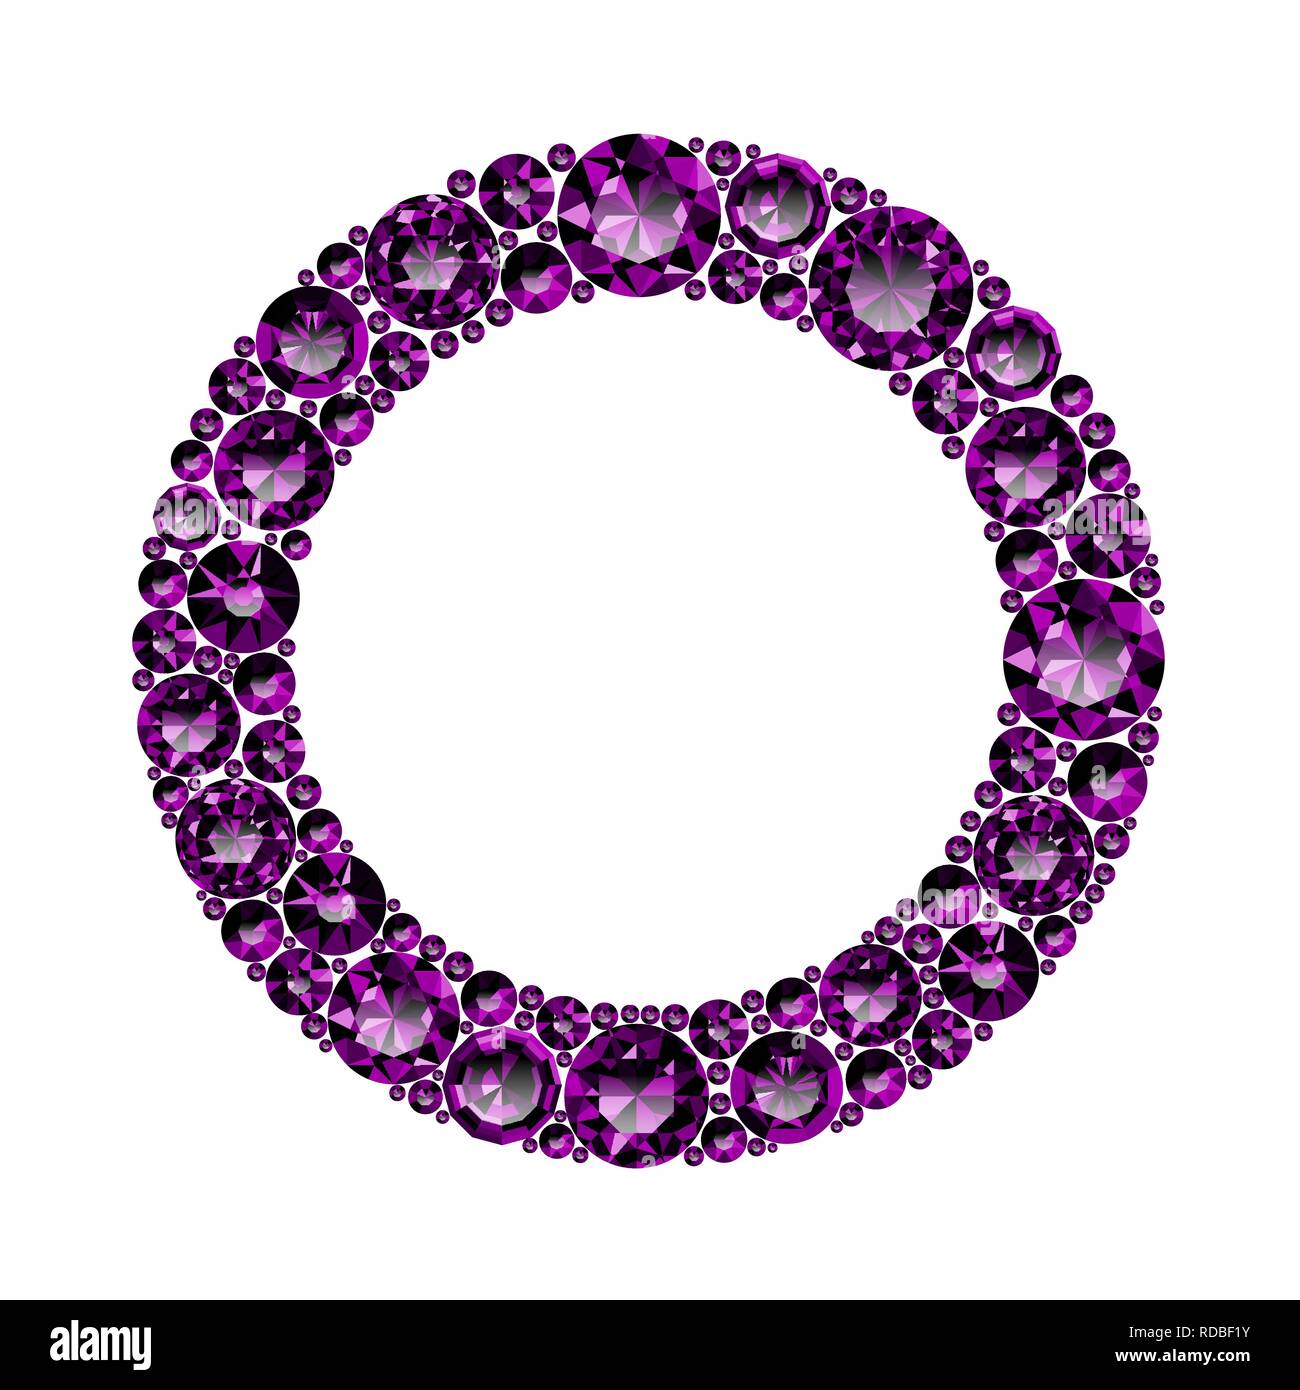 Runde Rahmen aus realistischen lila Amethysten mit komplexen Schnitte Stock Vektor